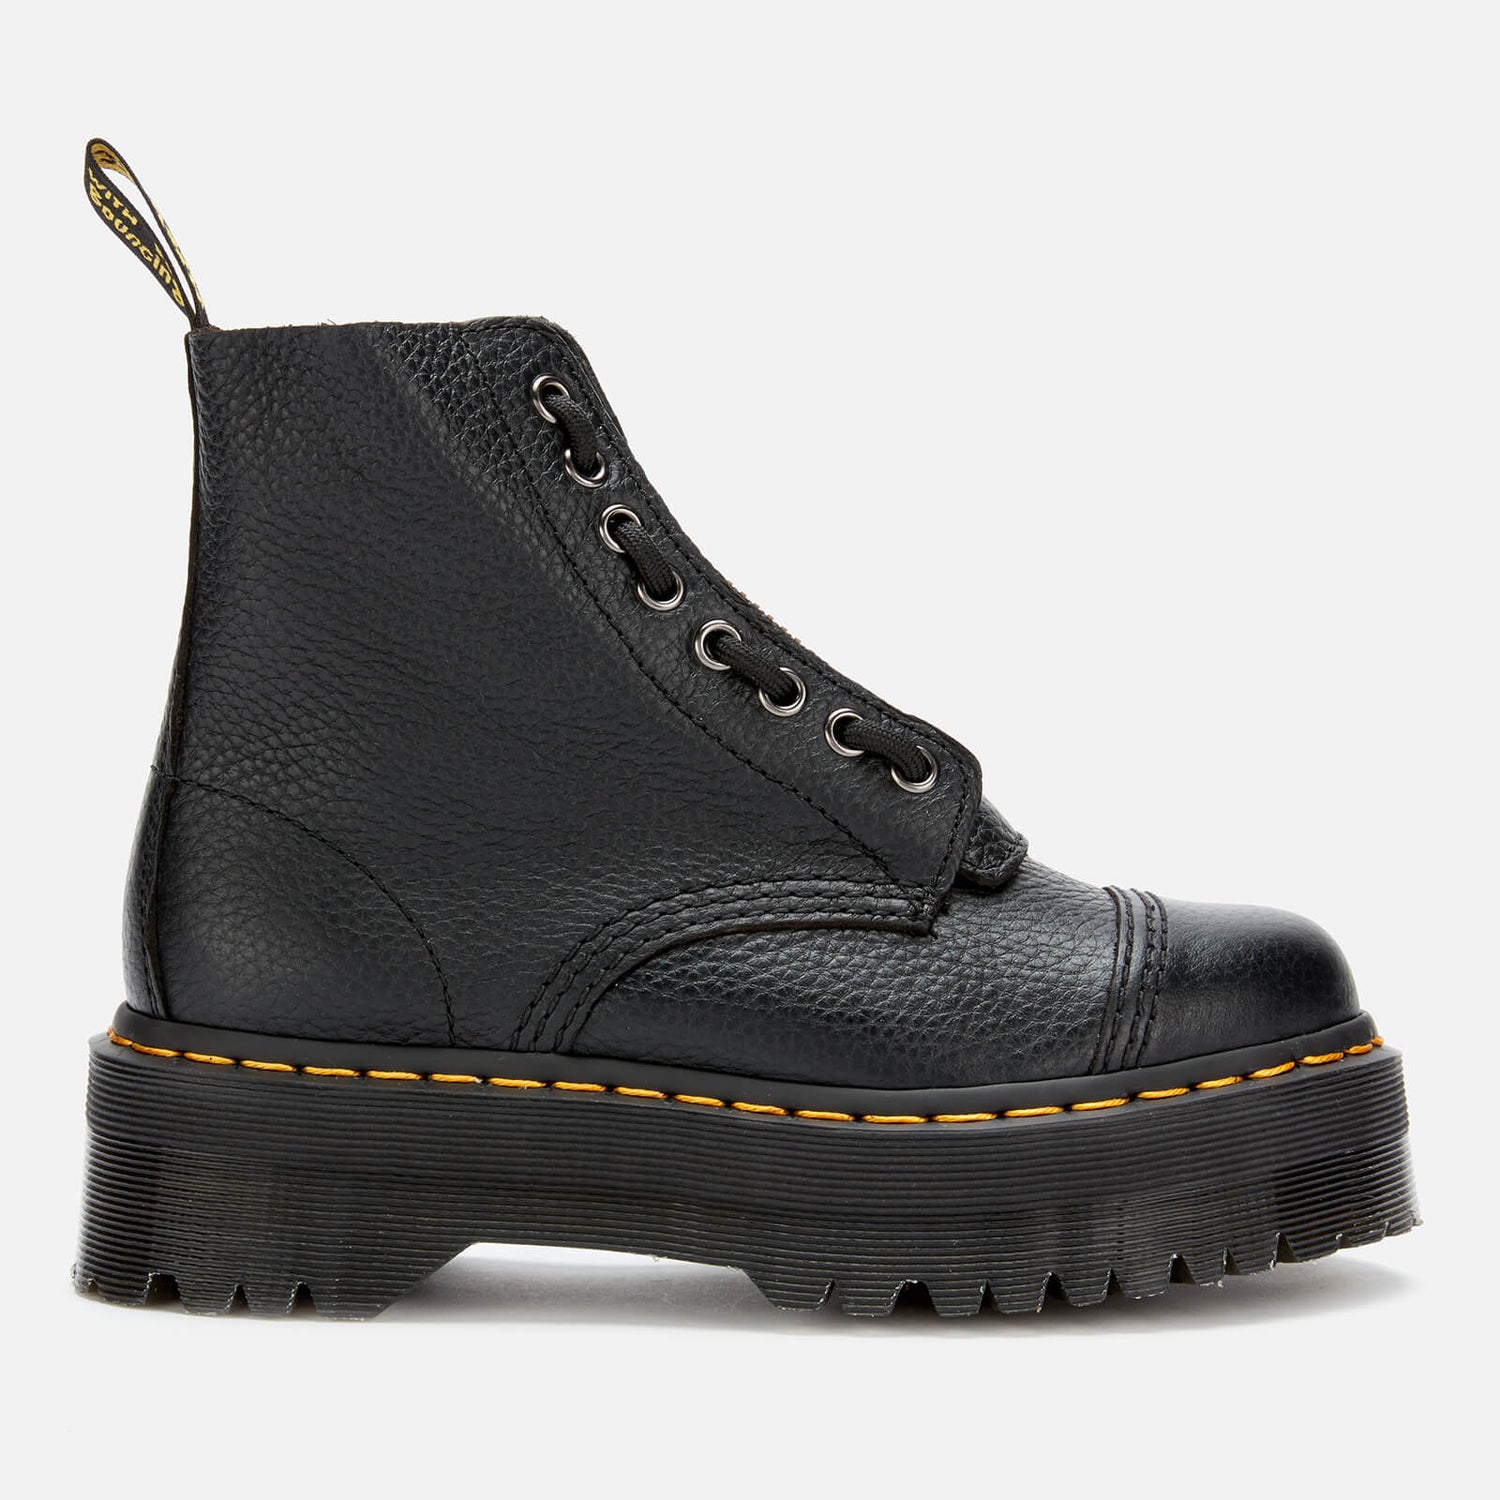 Dr. Martens Women's Sinclair Leather Zip Front Boots - Black - UK 3